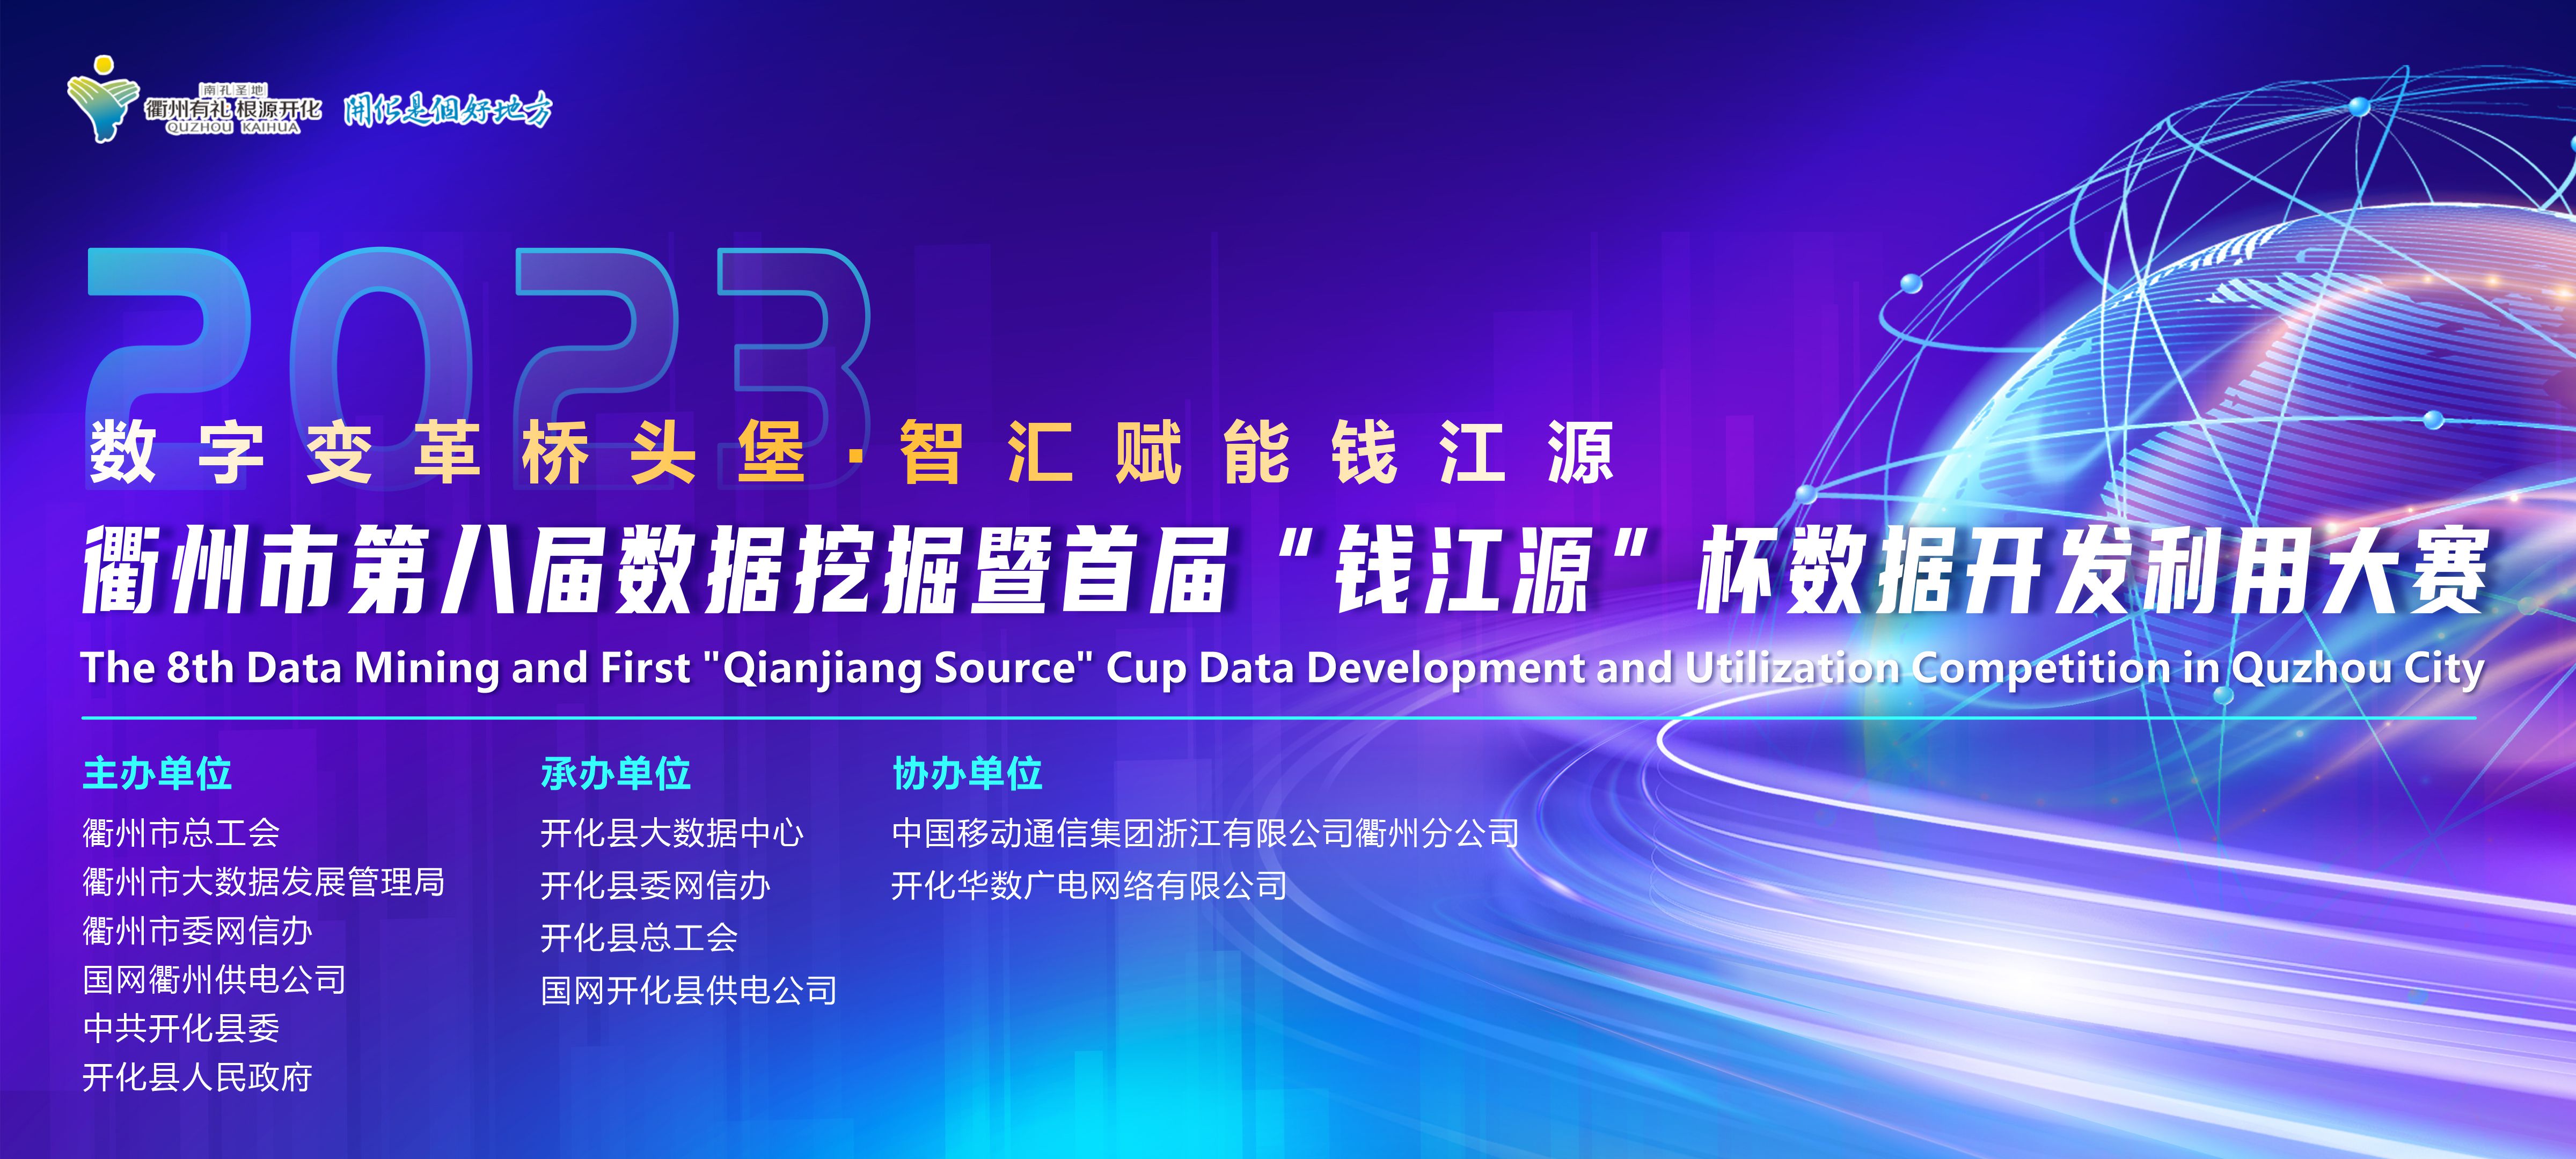 衢州市第八届数据挖掘暨首届“钱江源”杯数据开发利用大赛